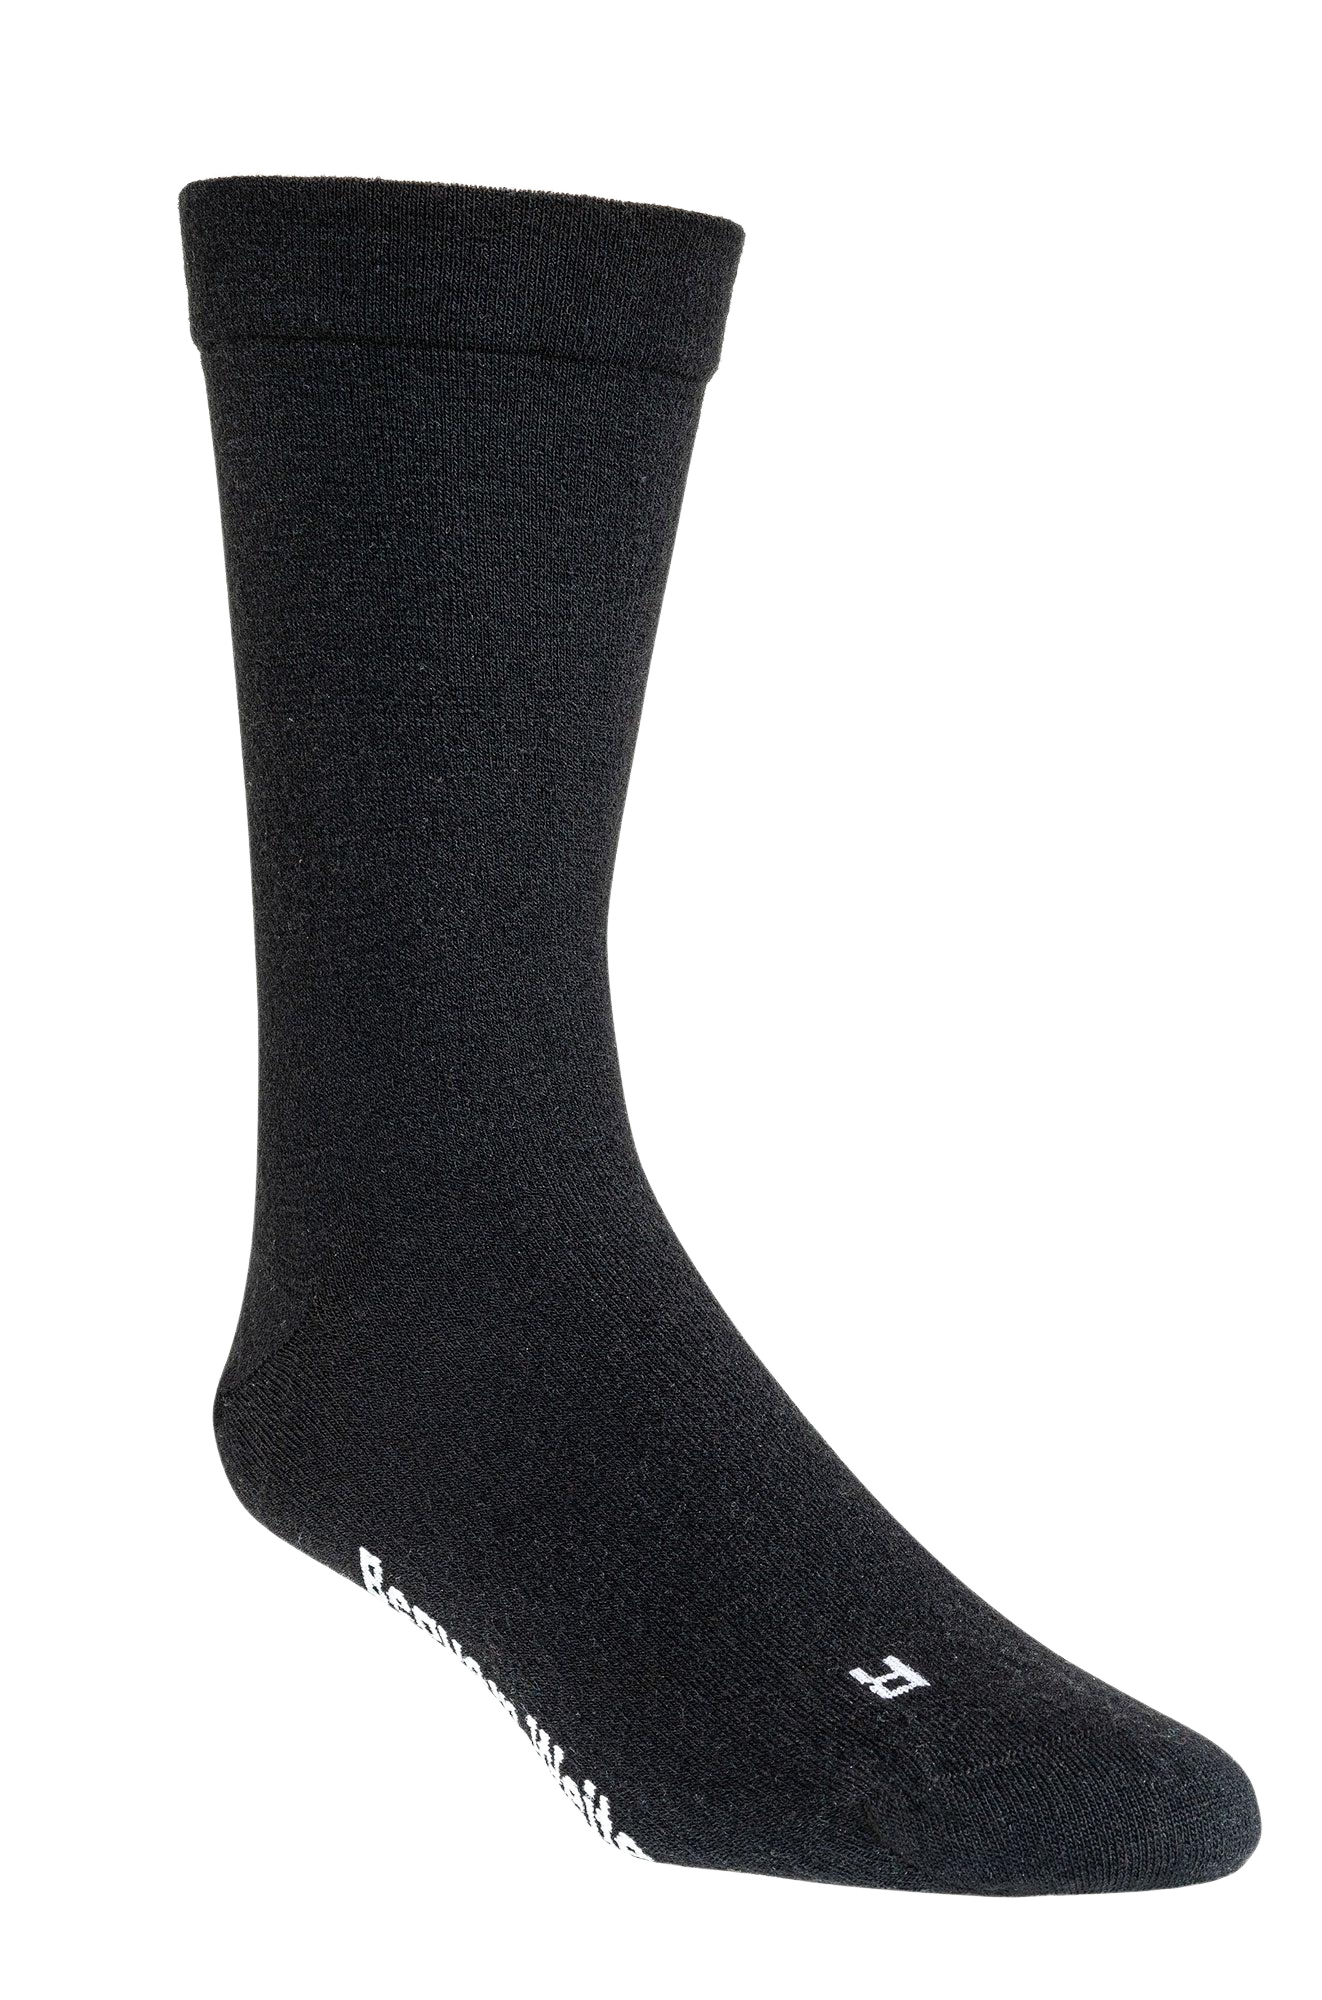 Zeigt due schwarze Diabetikersocke. Die Socke ist halblang und für den Sommer bestens geeignet. Im winter kannst du sie tragen aber wir empfeehlen dickeres Material.